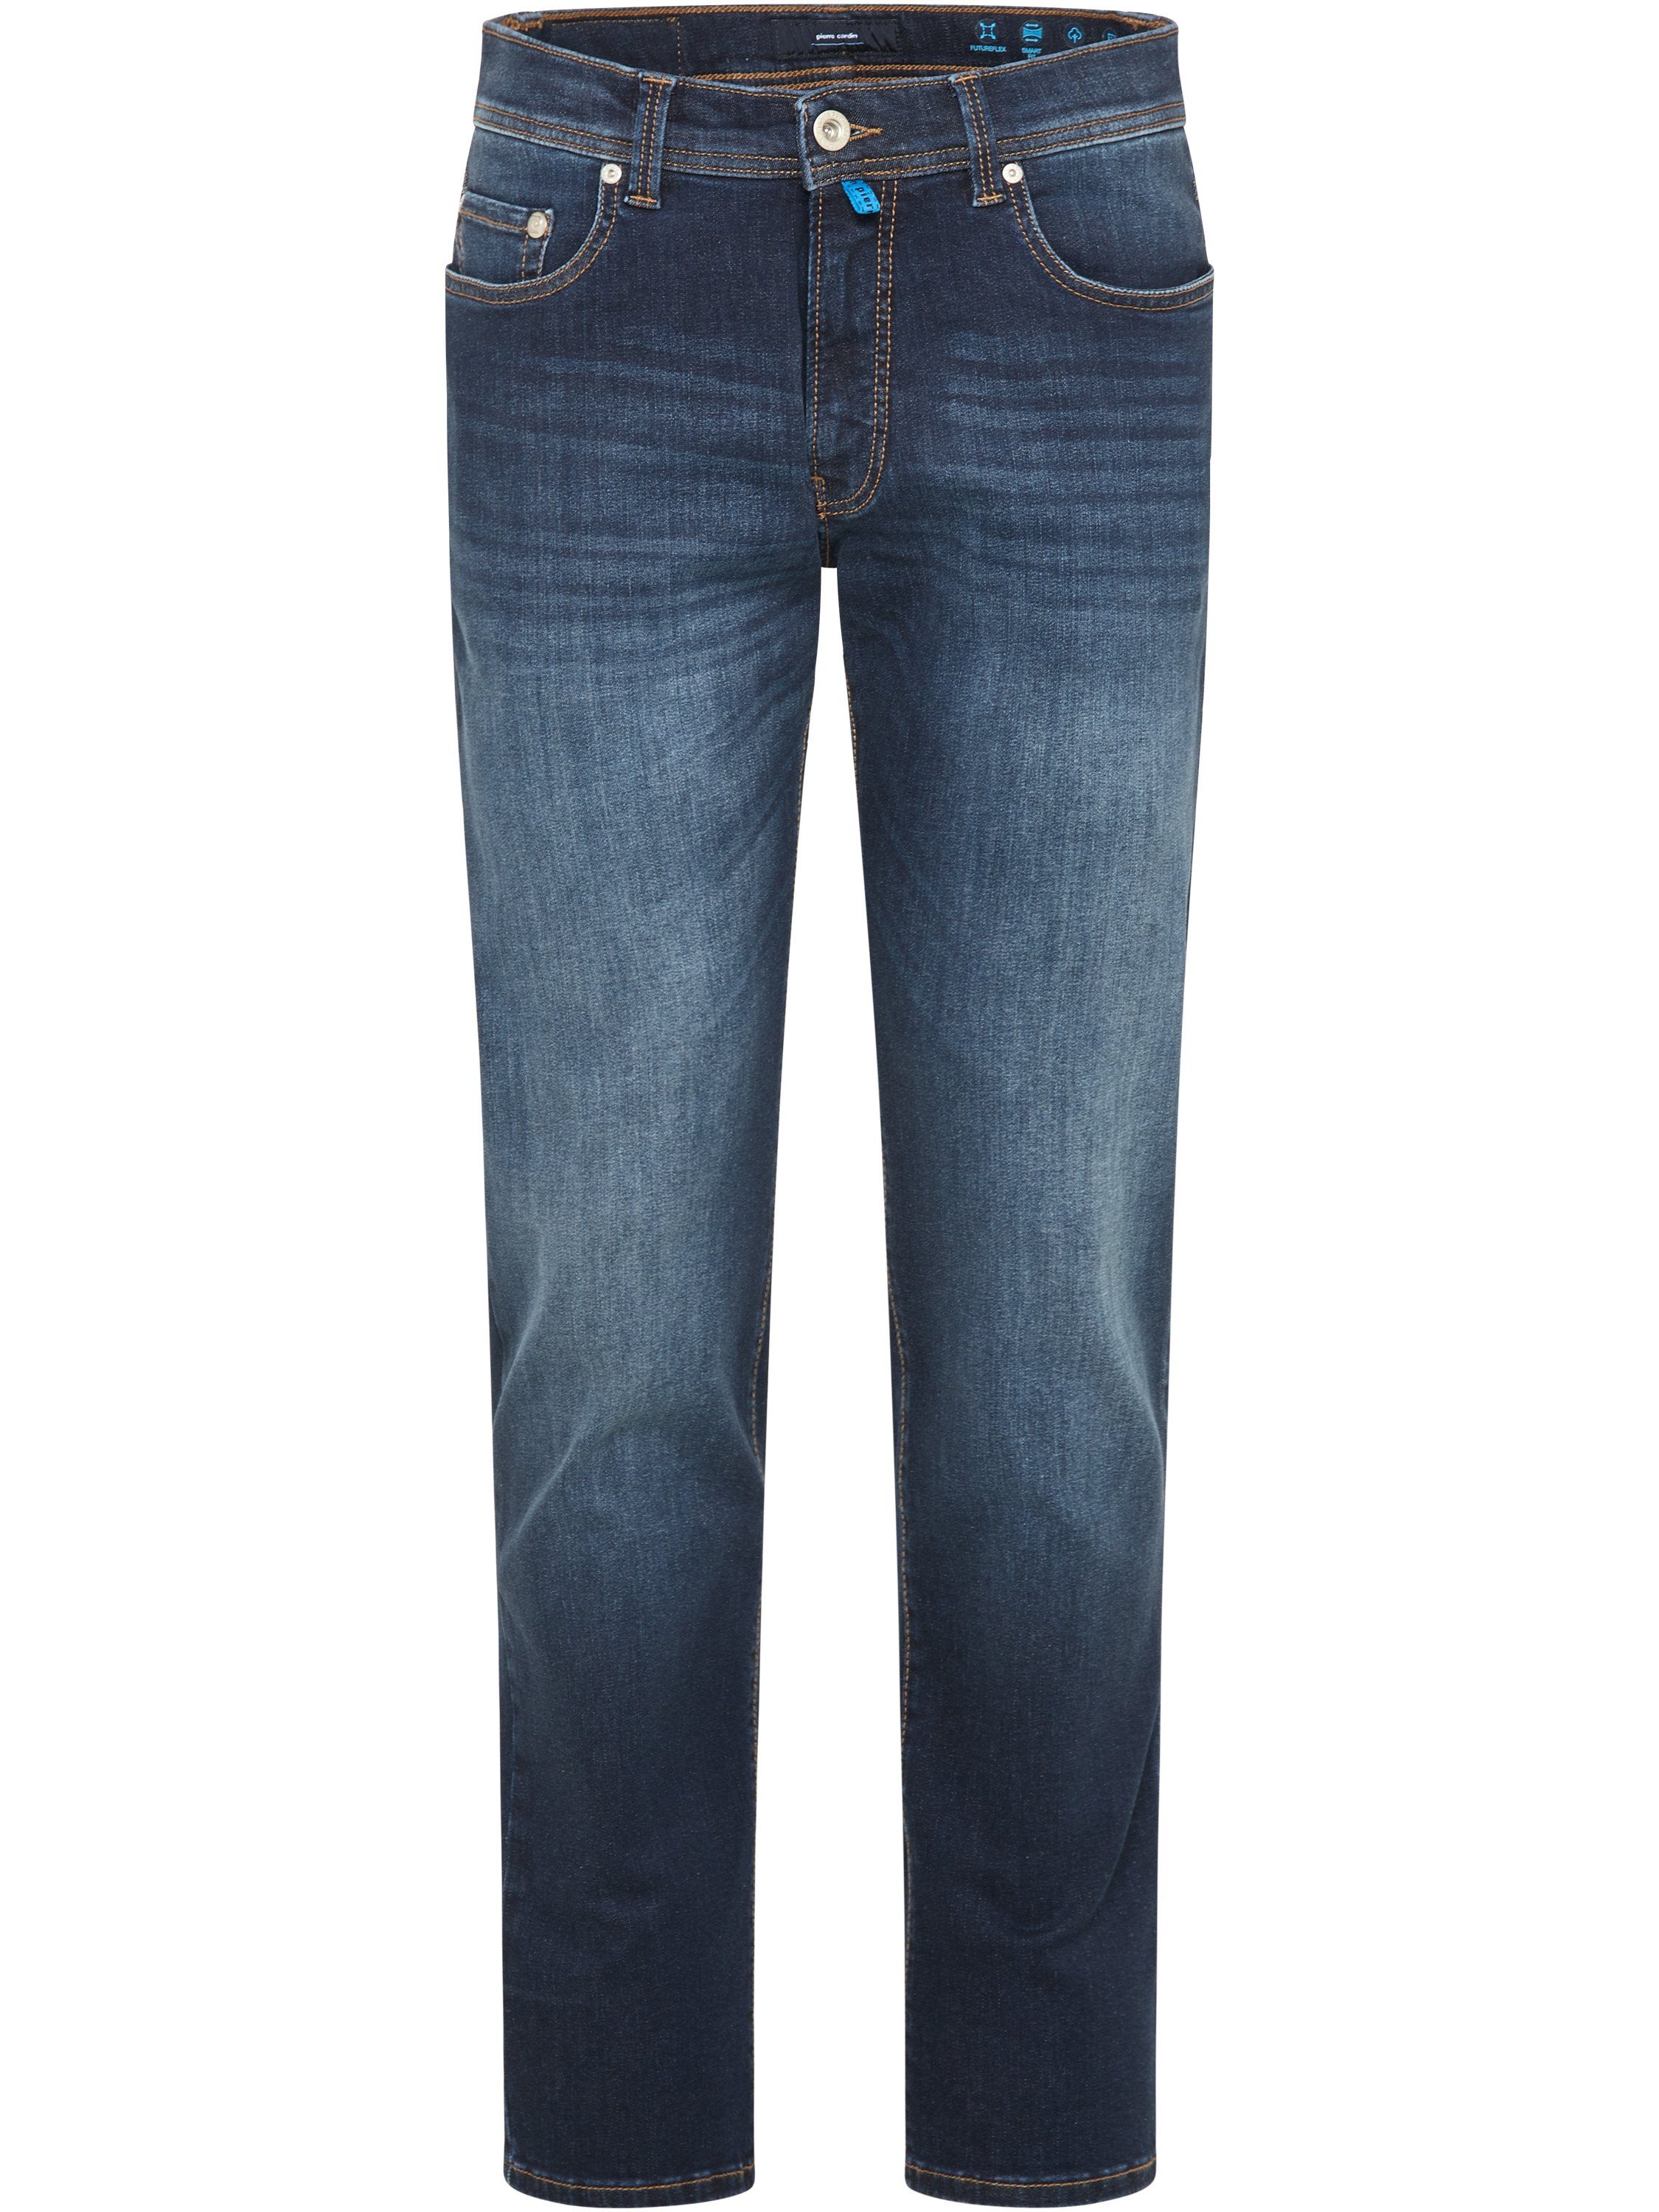 Cardin 5-Pocket-Jeans CARDIN PIERRE dark Pierre 3451 LYON FUTUREFLEX denim 8820.01 buffies